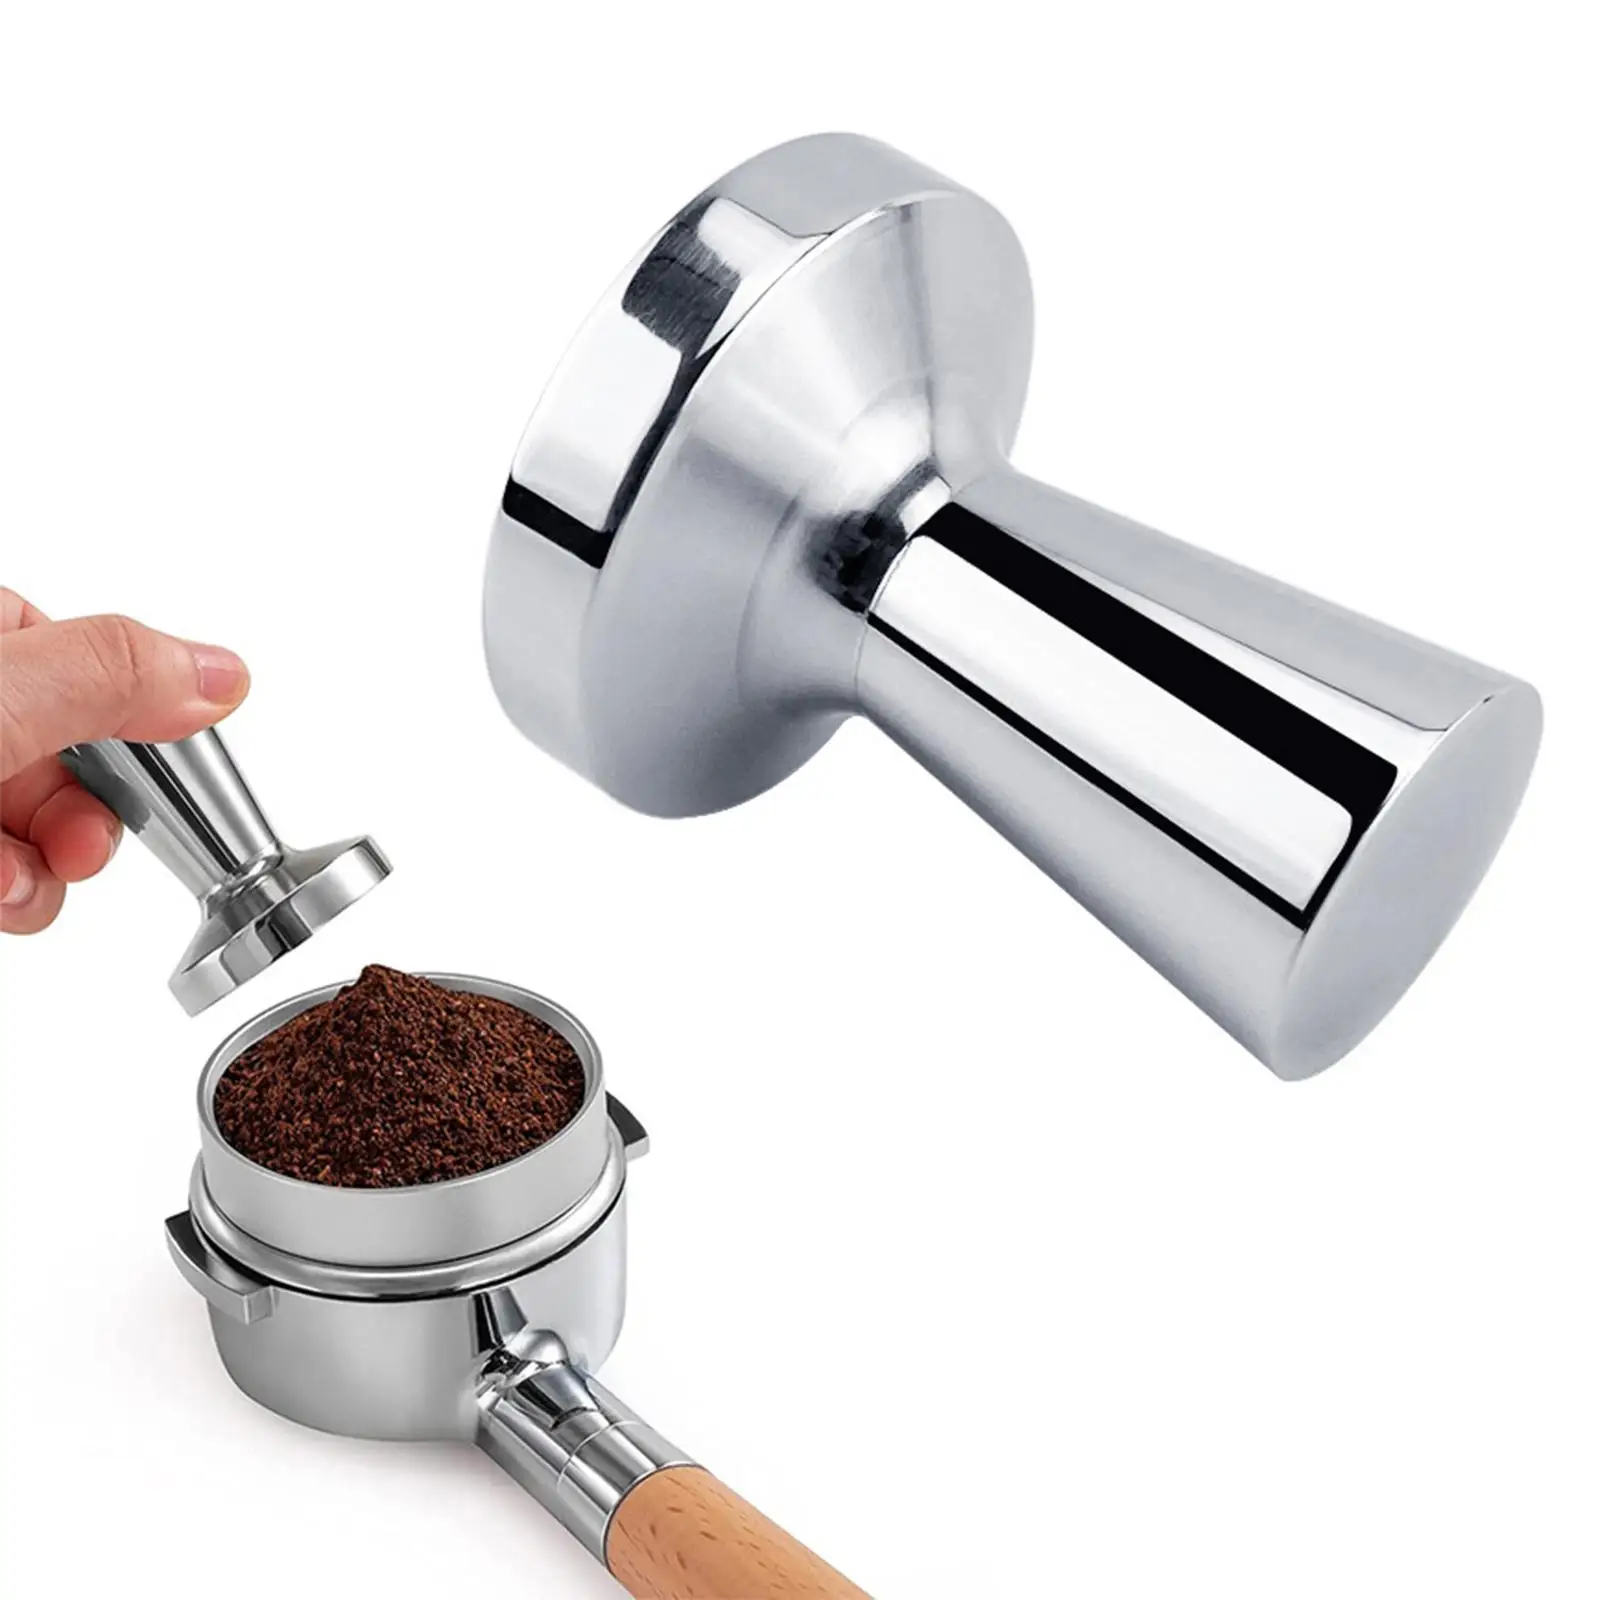 Coffee Tamper 40mm Handheld Flat Base Hand Tamper Professional Grind Tamper for Restaurants Household Cafe Supplies Home Kitchen